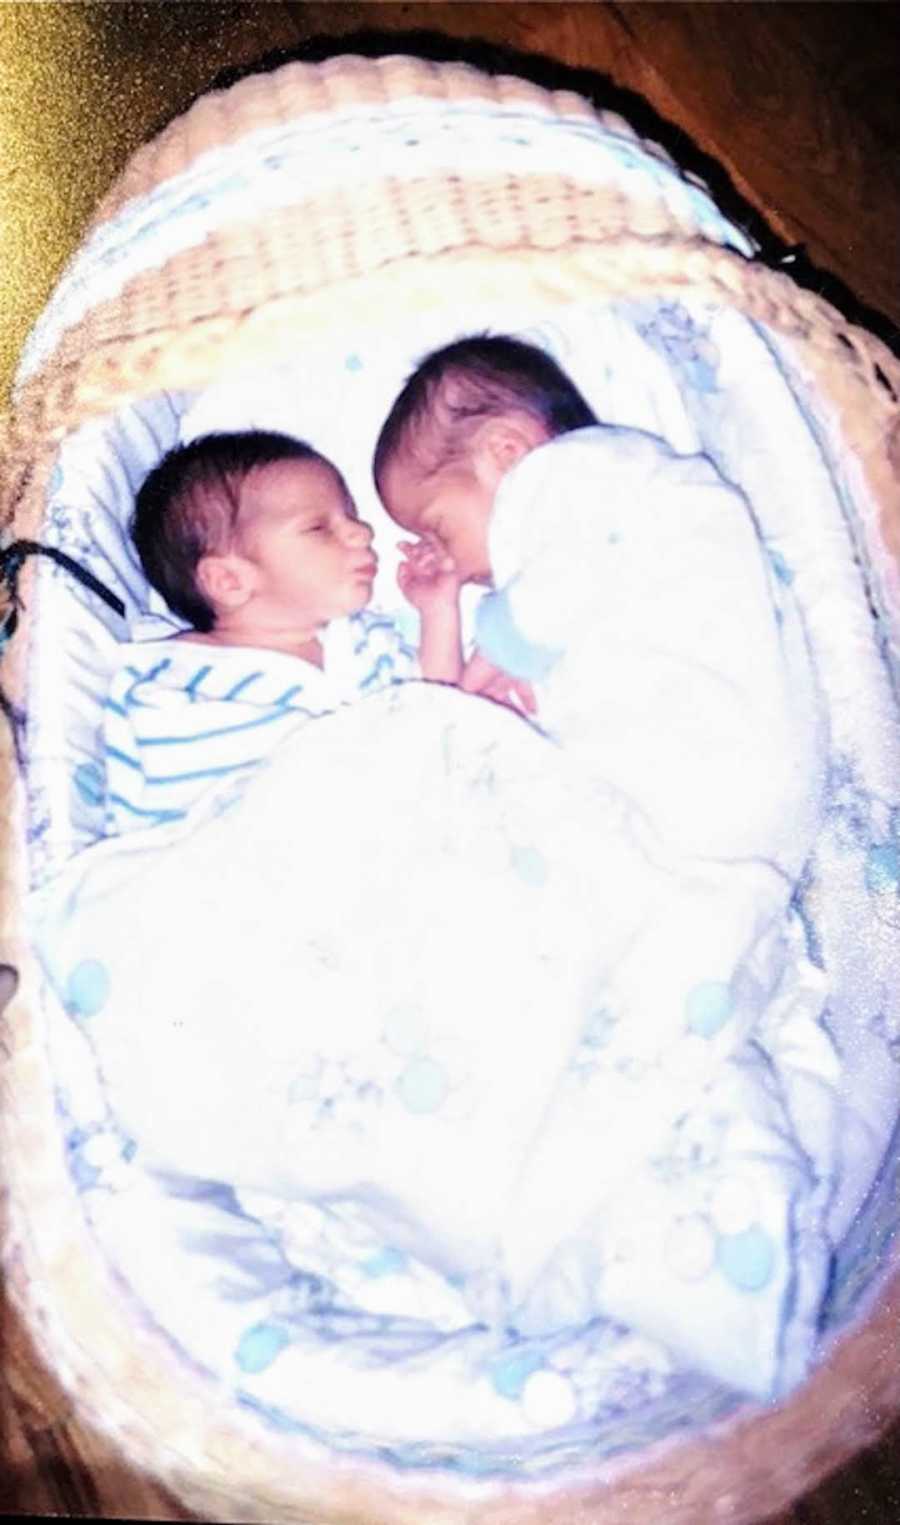 newborn twins